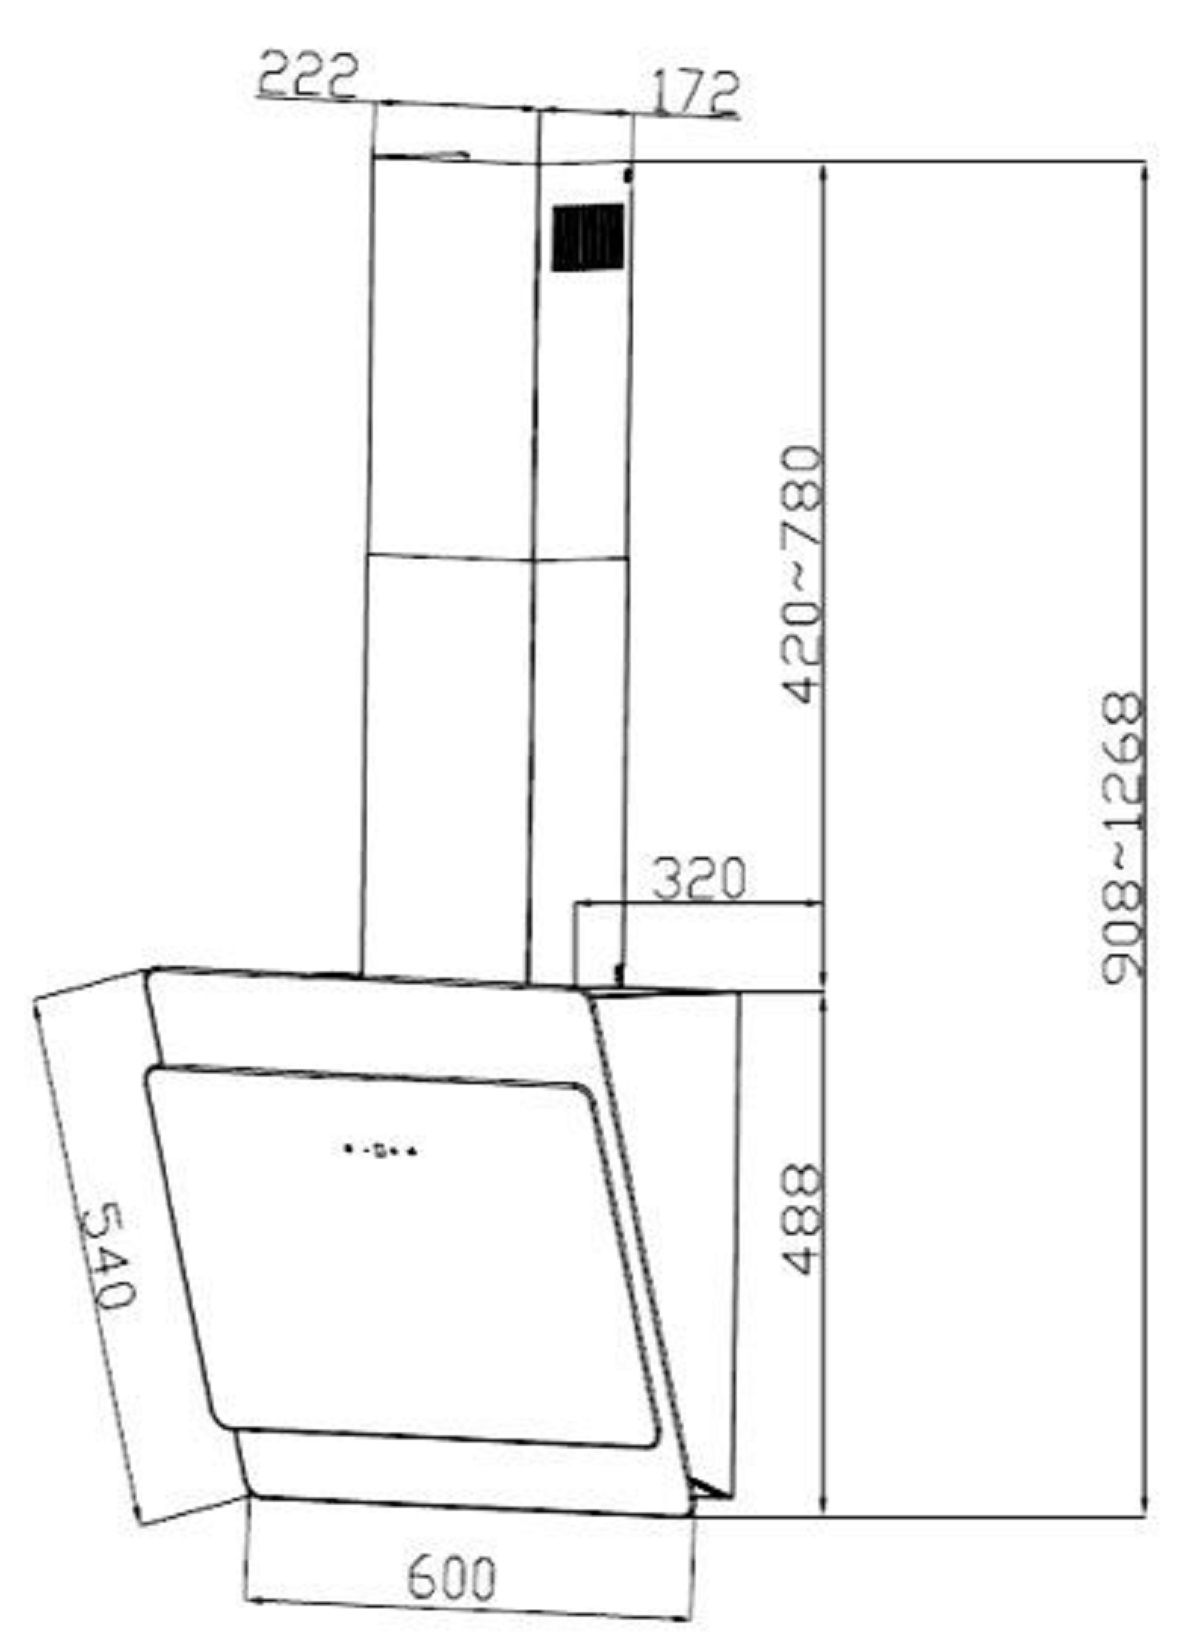 Dunstabzugshaube S3-60 tief) (600 mm PKM mm breit, ABTZ, 320